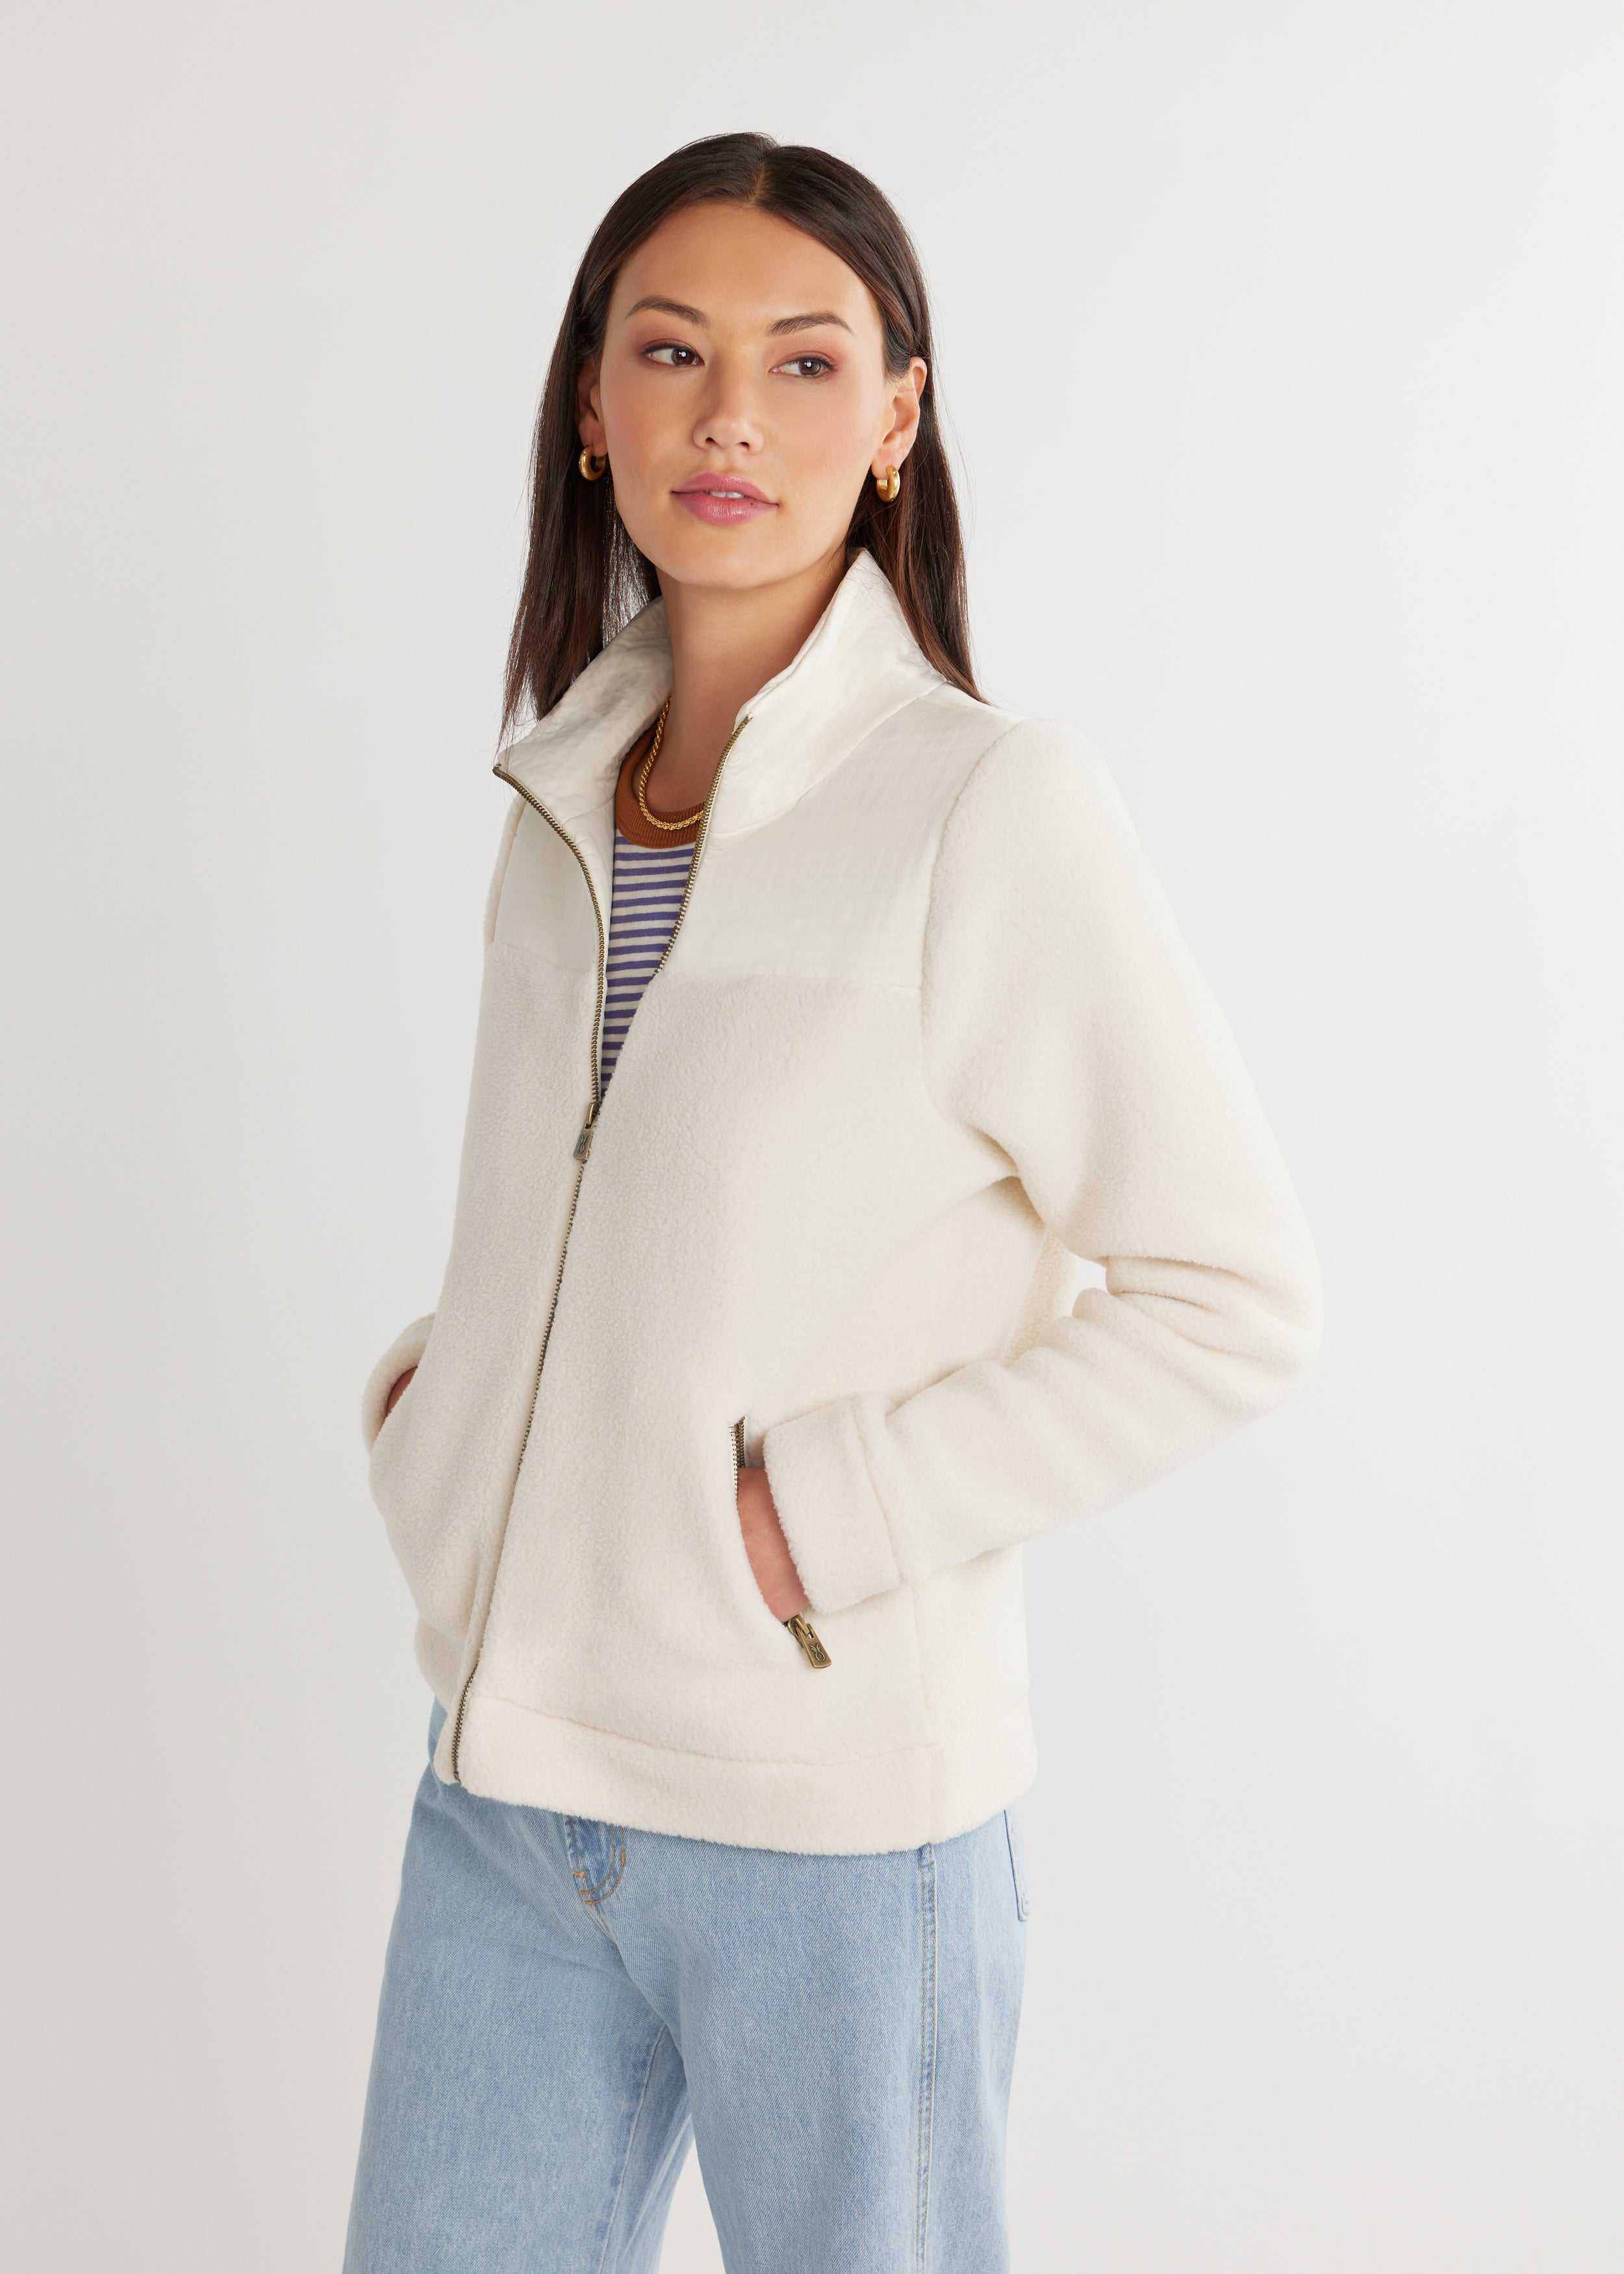 Women's Quincy Jacket in Sherpa Fleece (Cream) in Size L - Modern Fleece Clothing